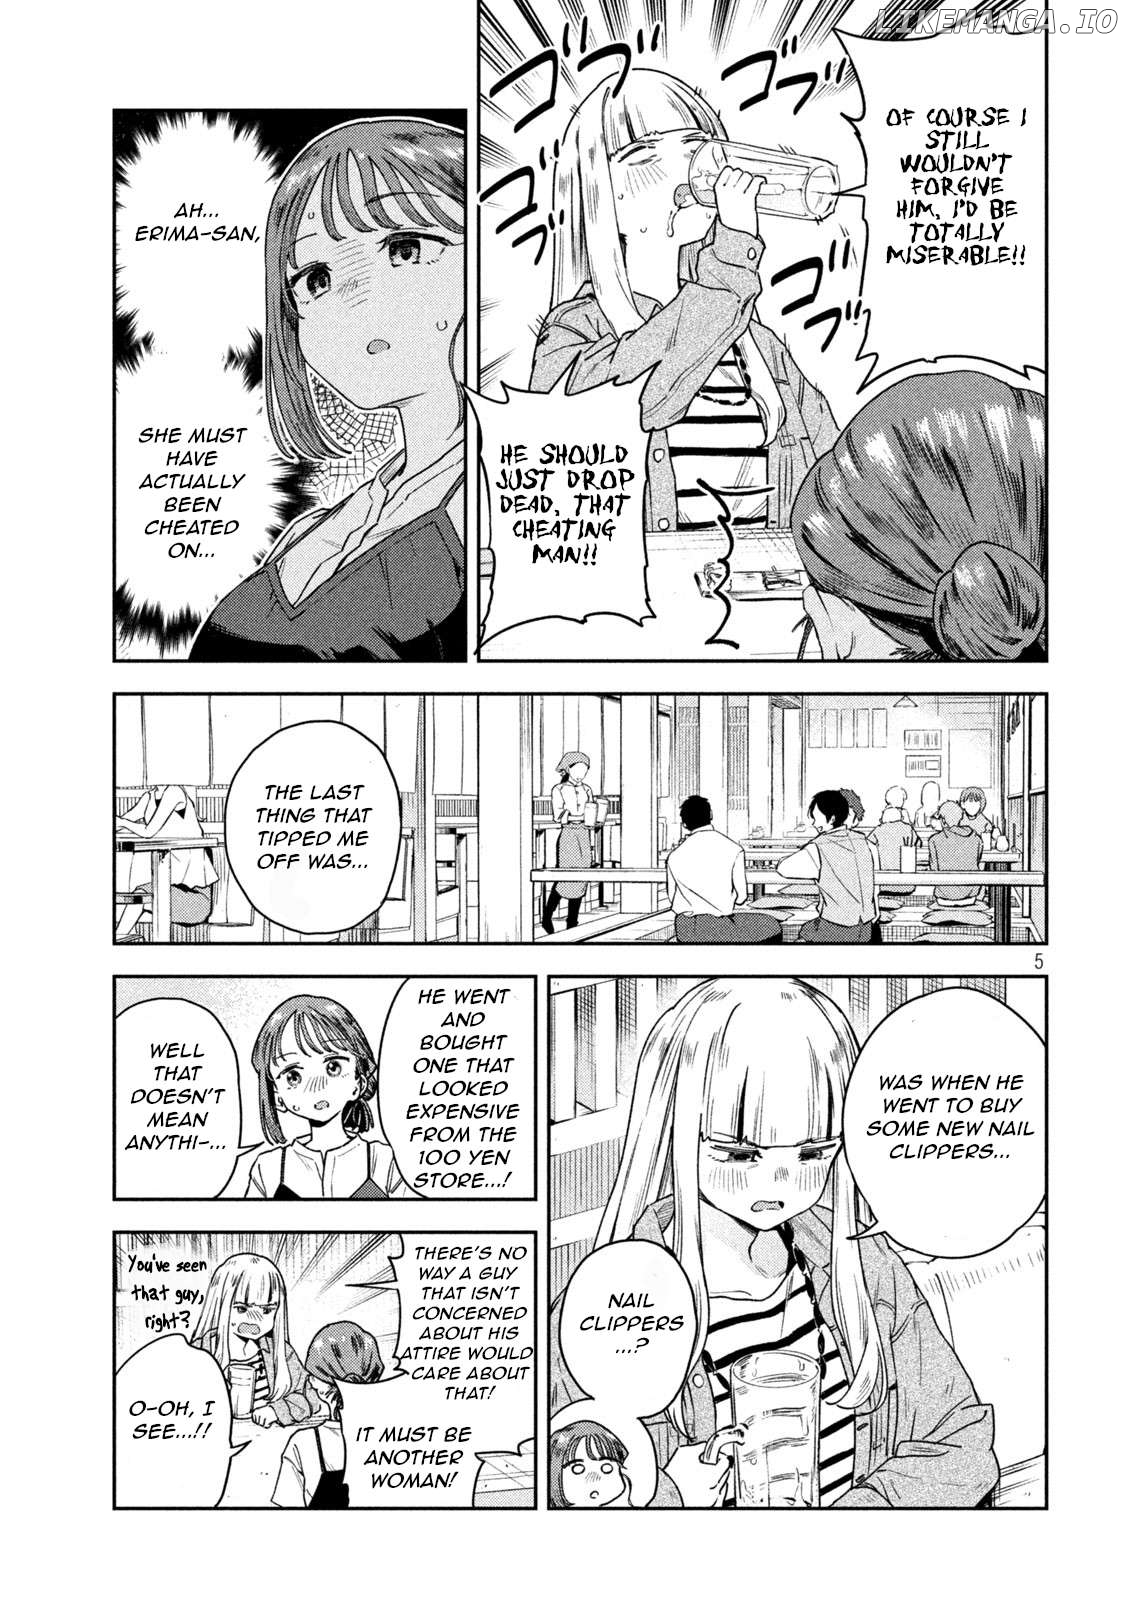 Miyo-Chan Sensei Said So Chapter 9 - page 5